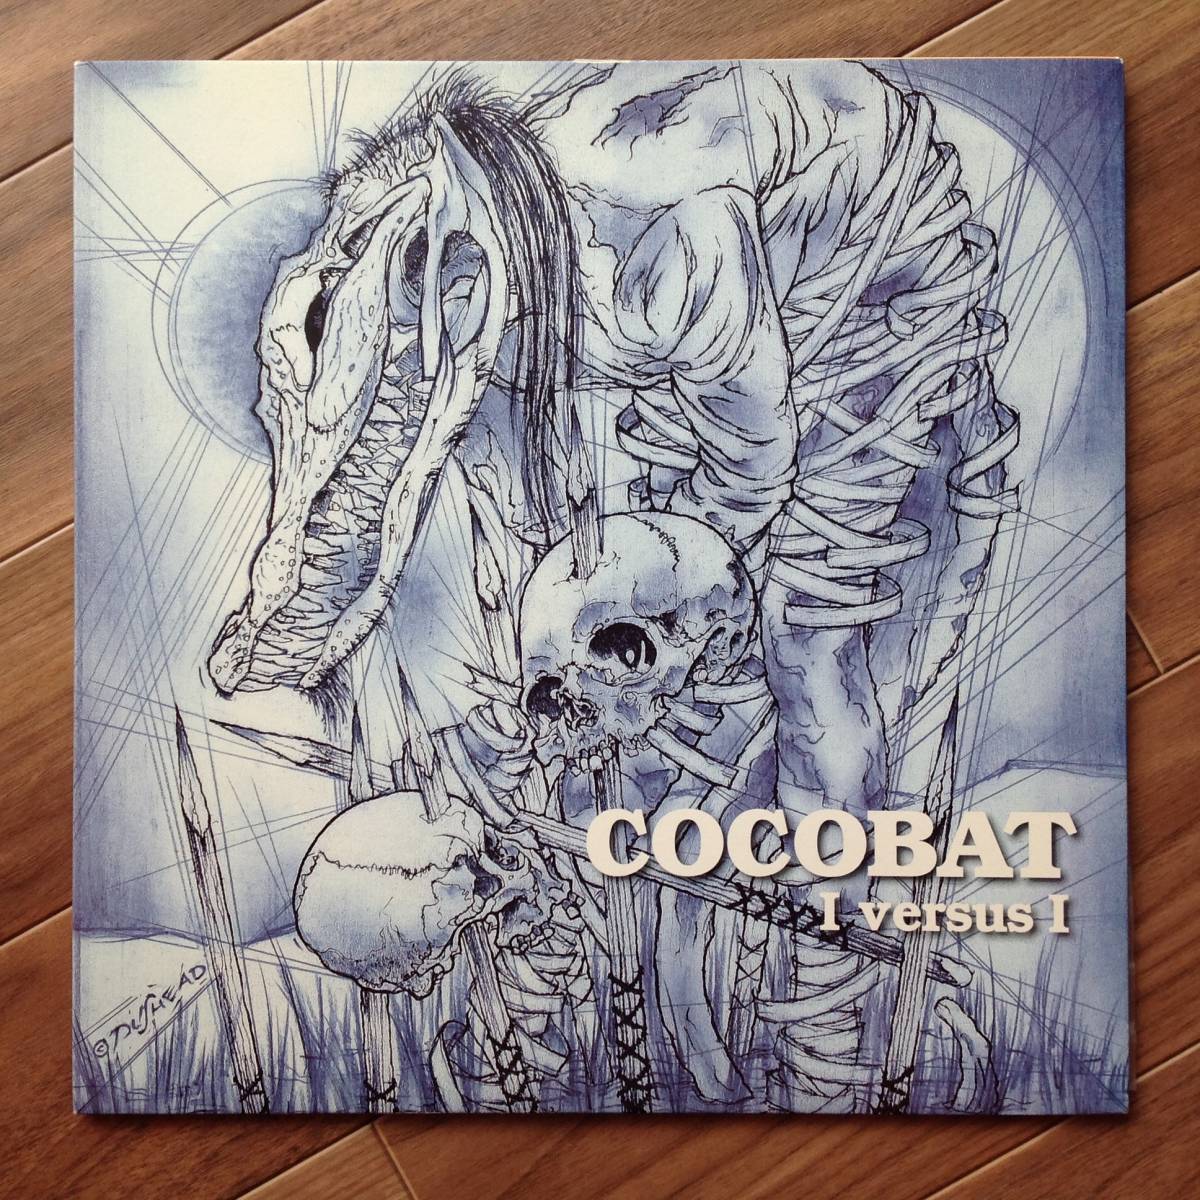 Cocobat - I Versus I